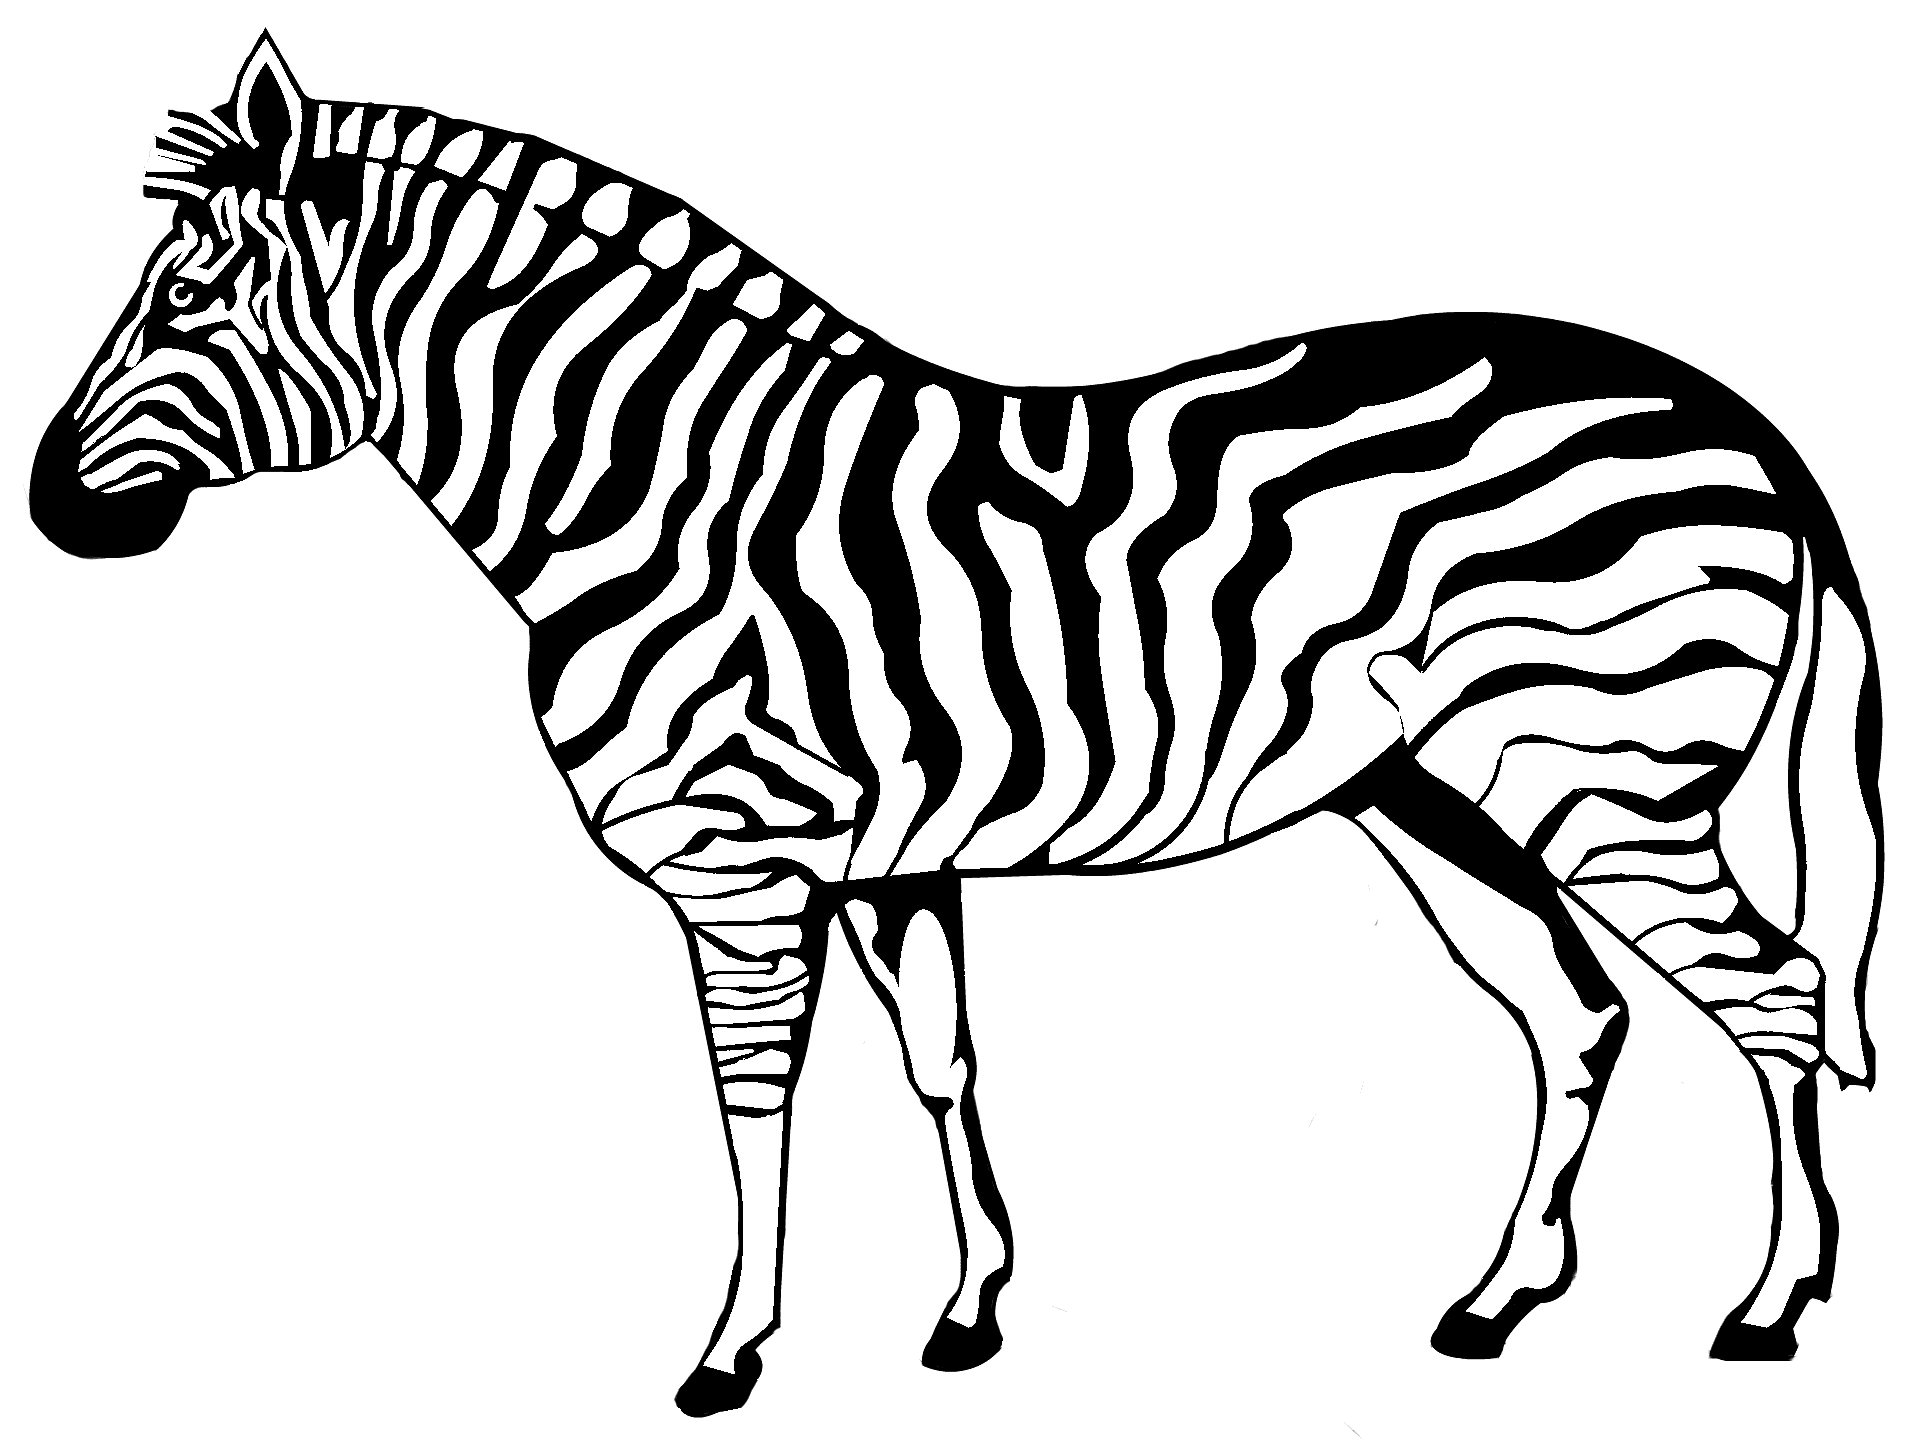 Disegno da colorare di una zebra